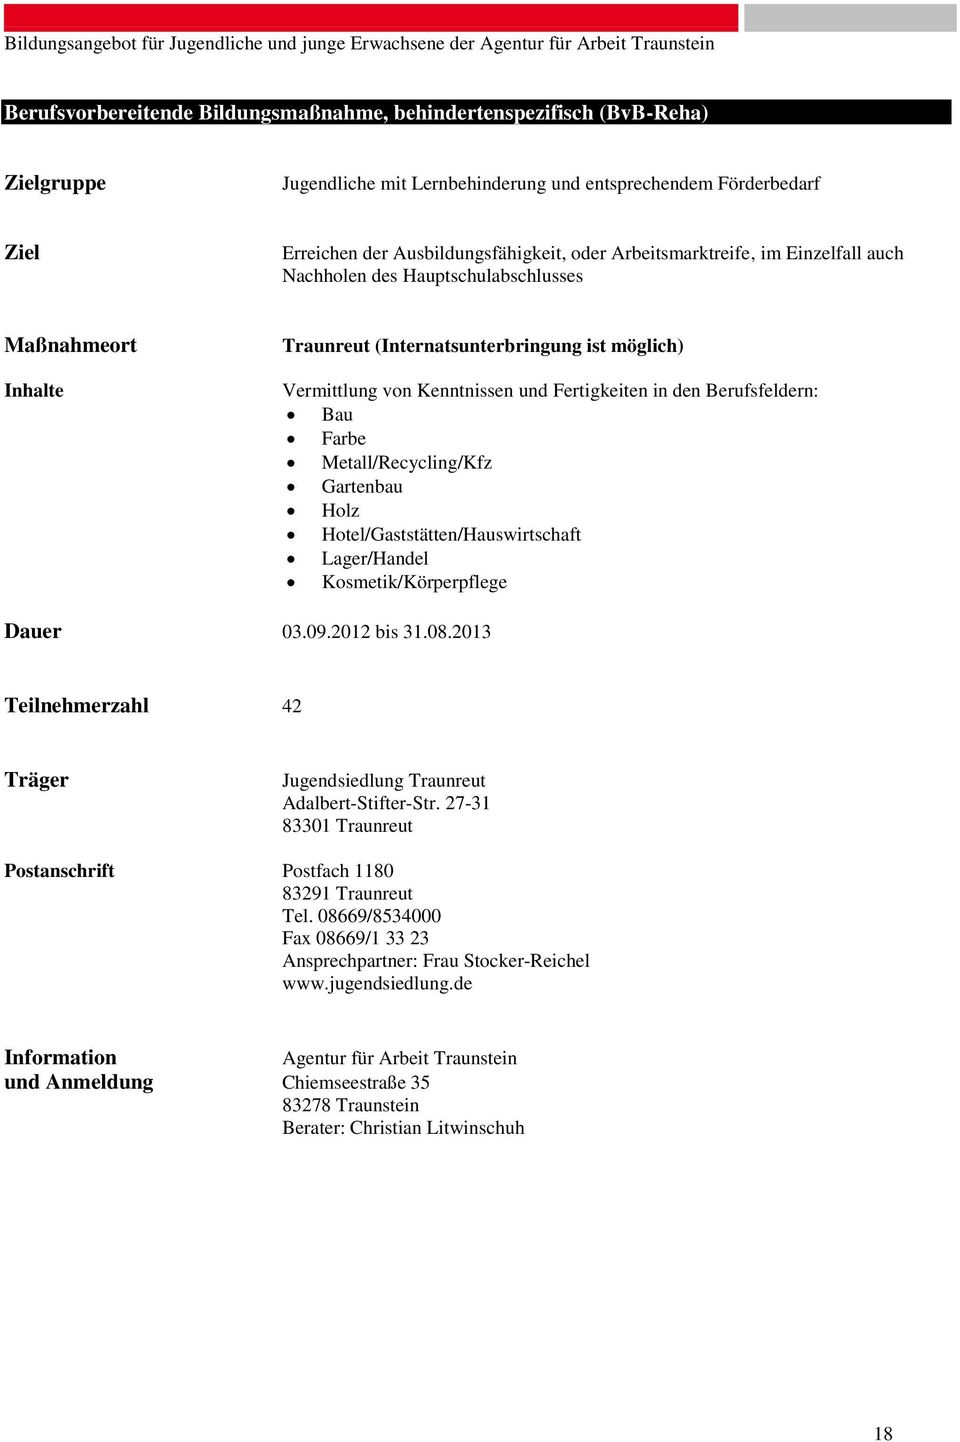 Berufsfeldern: Bau Farbe Metall/Recycling/Kfz Gartenbau Holz Hotel/Gaststätten/Hauswirtschaft Lager/Handel Kosmetik/Körperpflege Dauer 03.09.2012 bis 31.08.